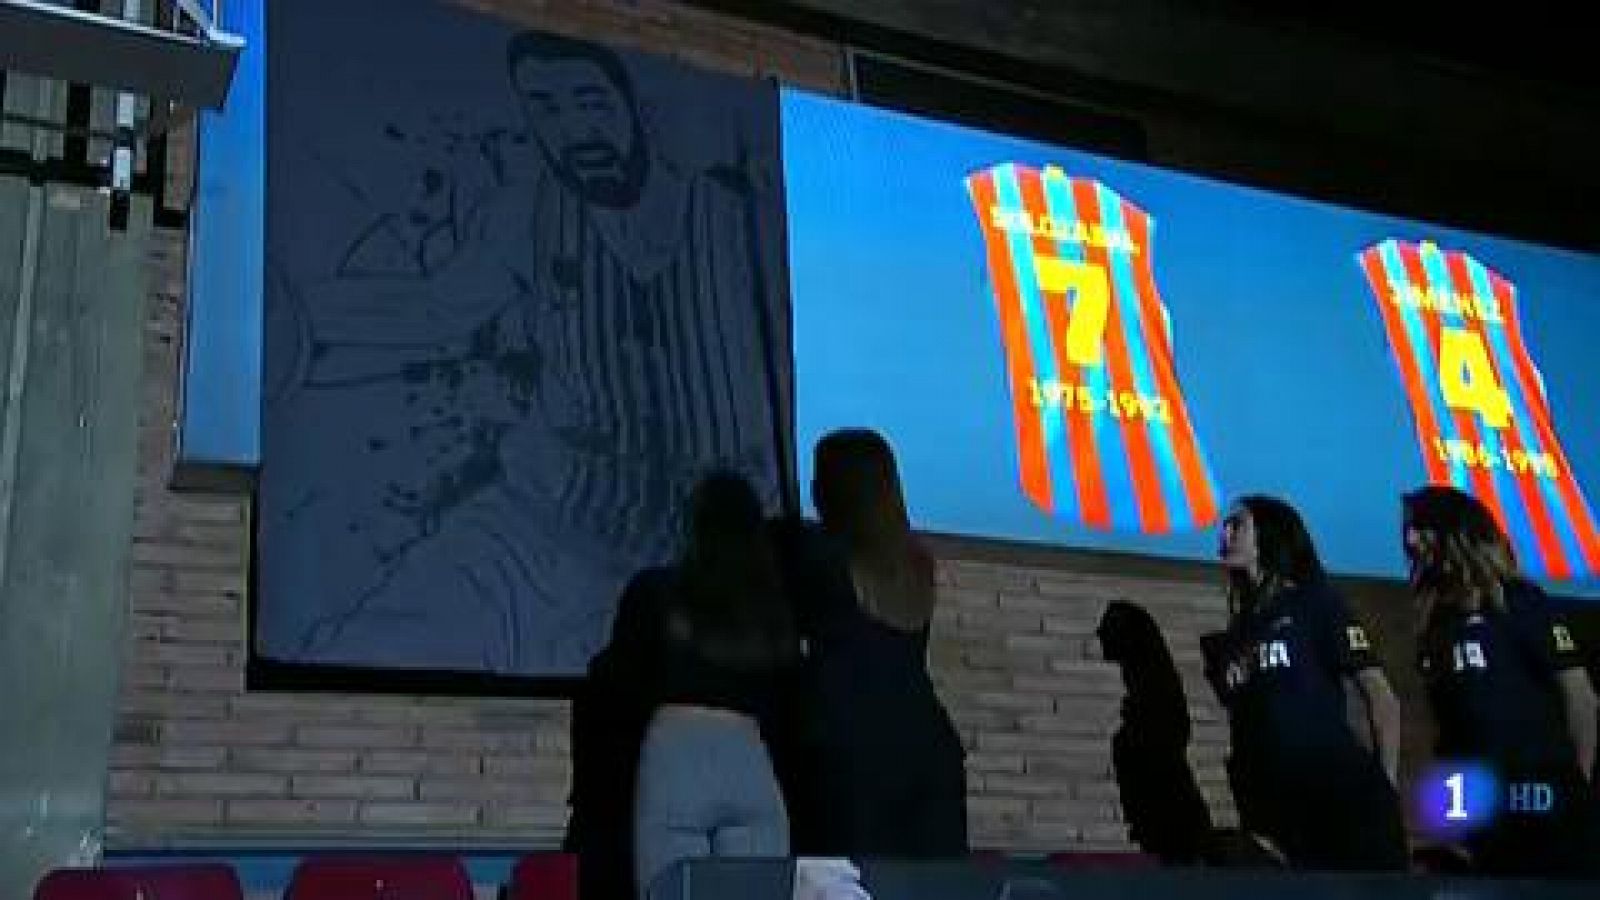 Baloncesto | El '11' de Juan Carlos Navarro ya cuelga en el Palau Blaugrana - RTVE.es